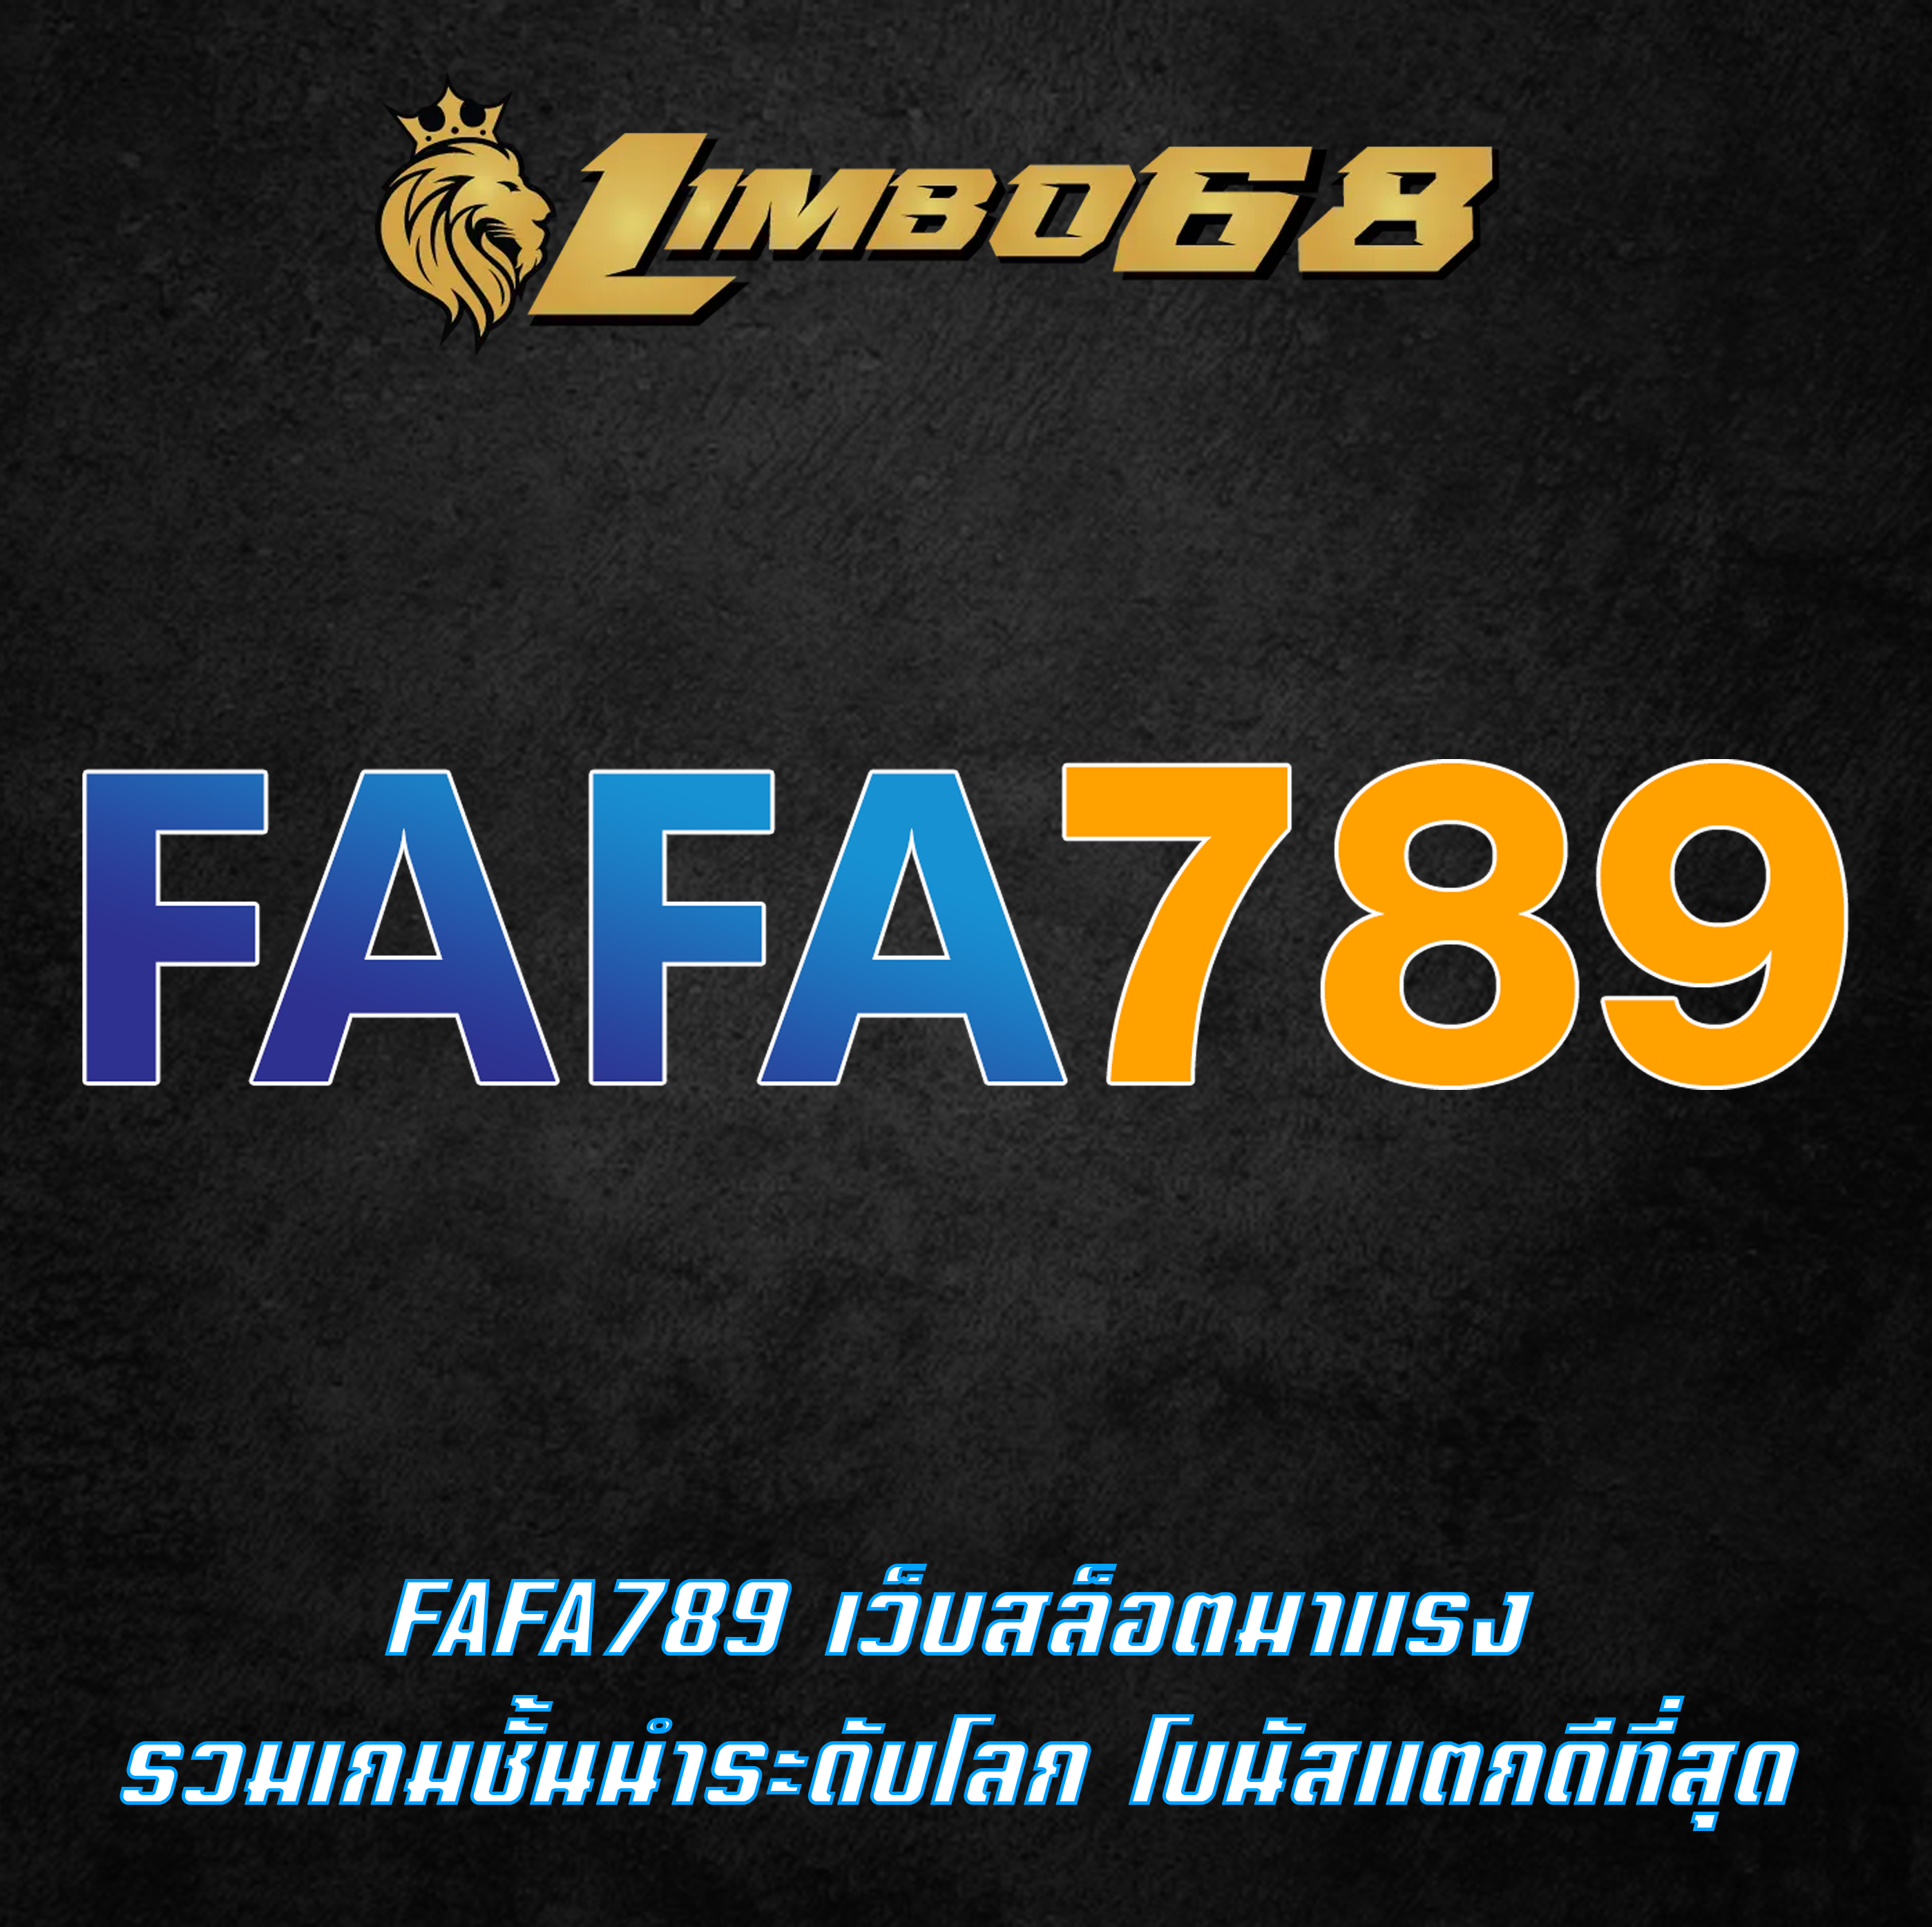 FAFA789